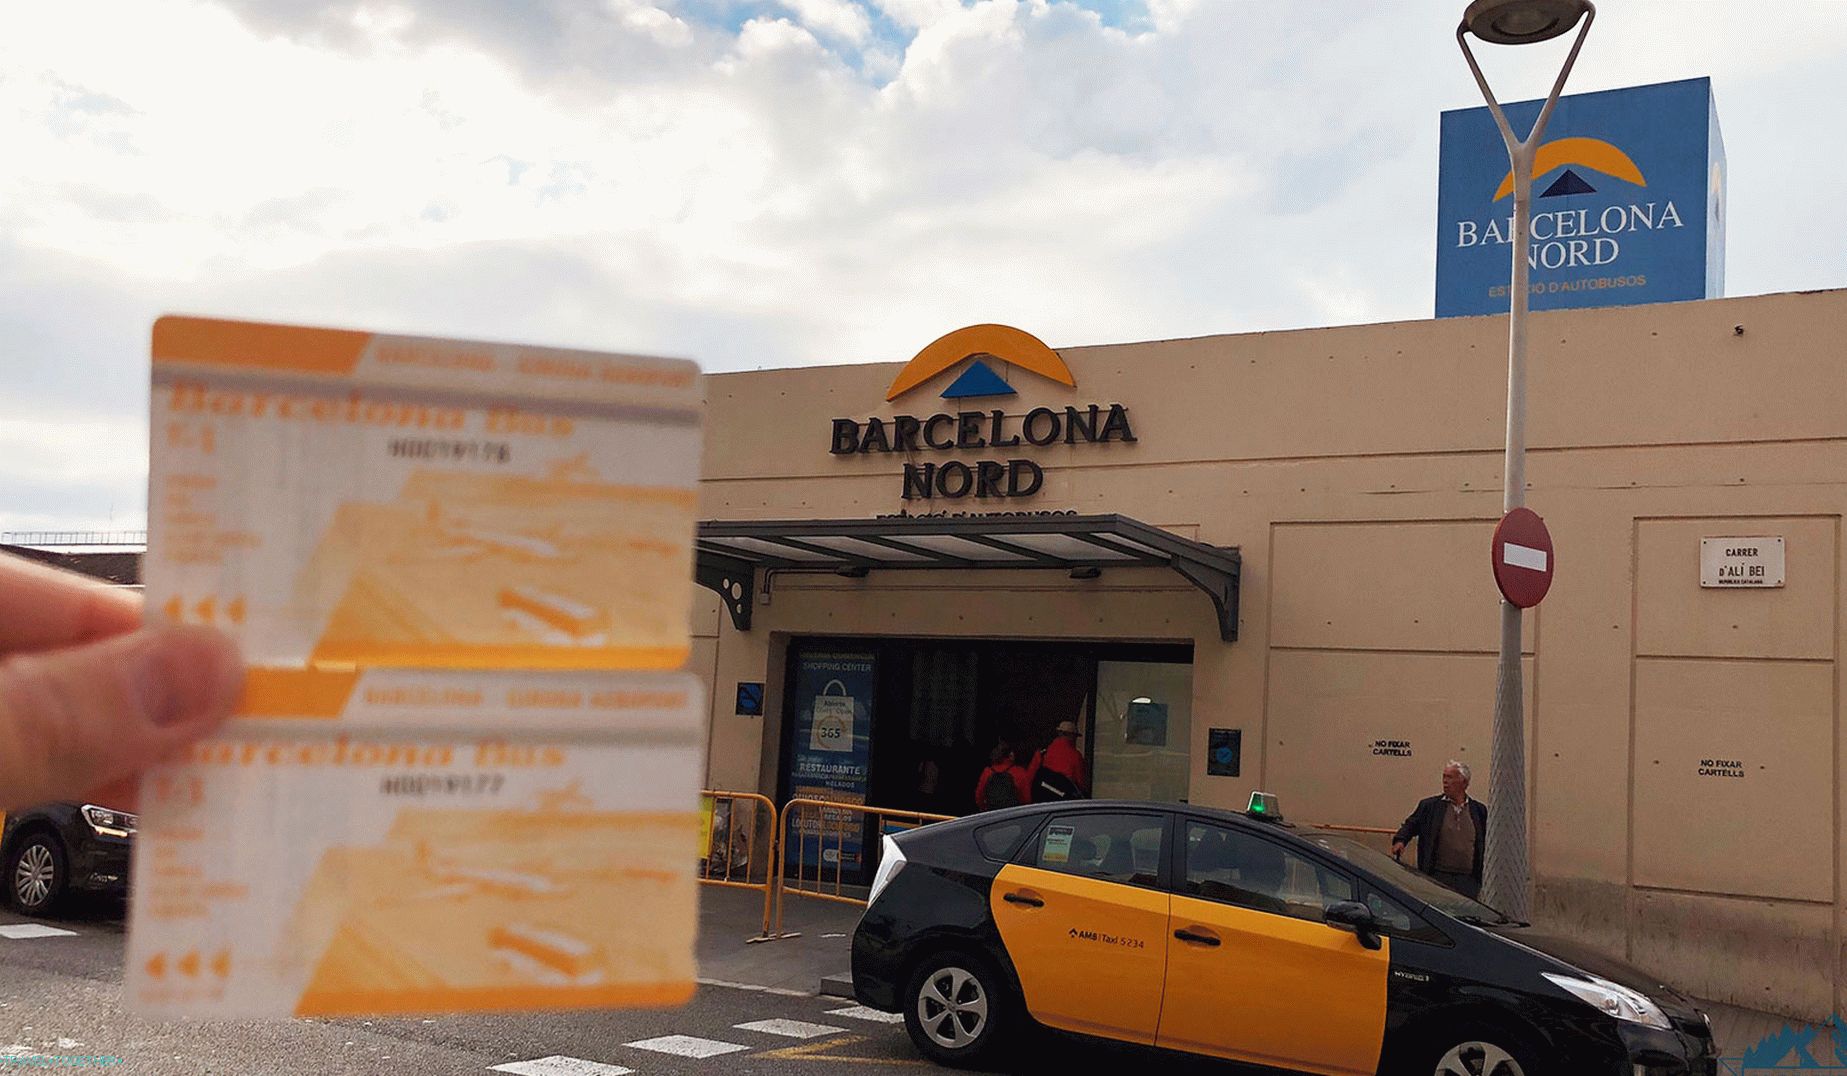 Letališče Girona: kako priti do Barcelone?